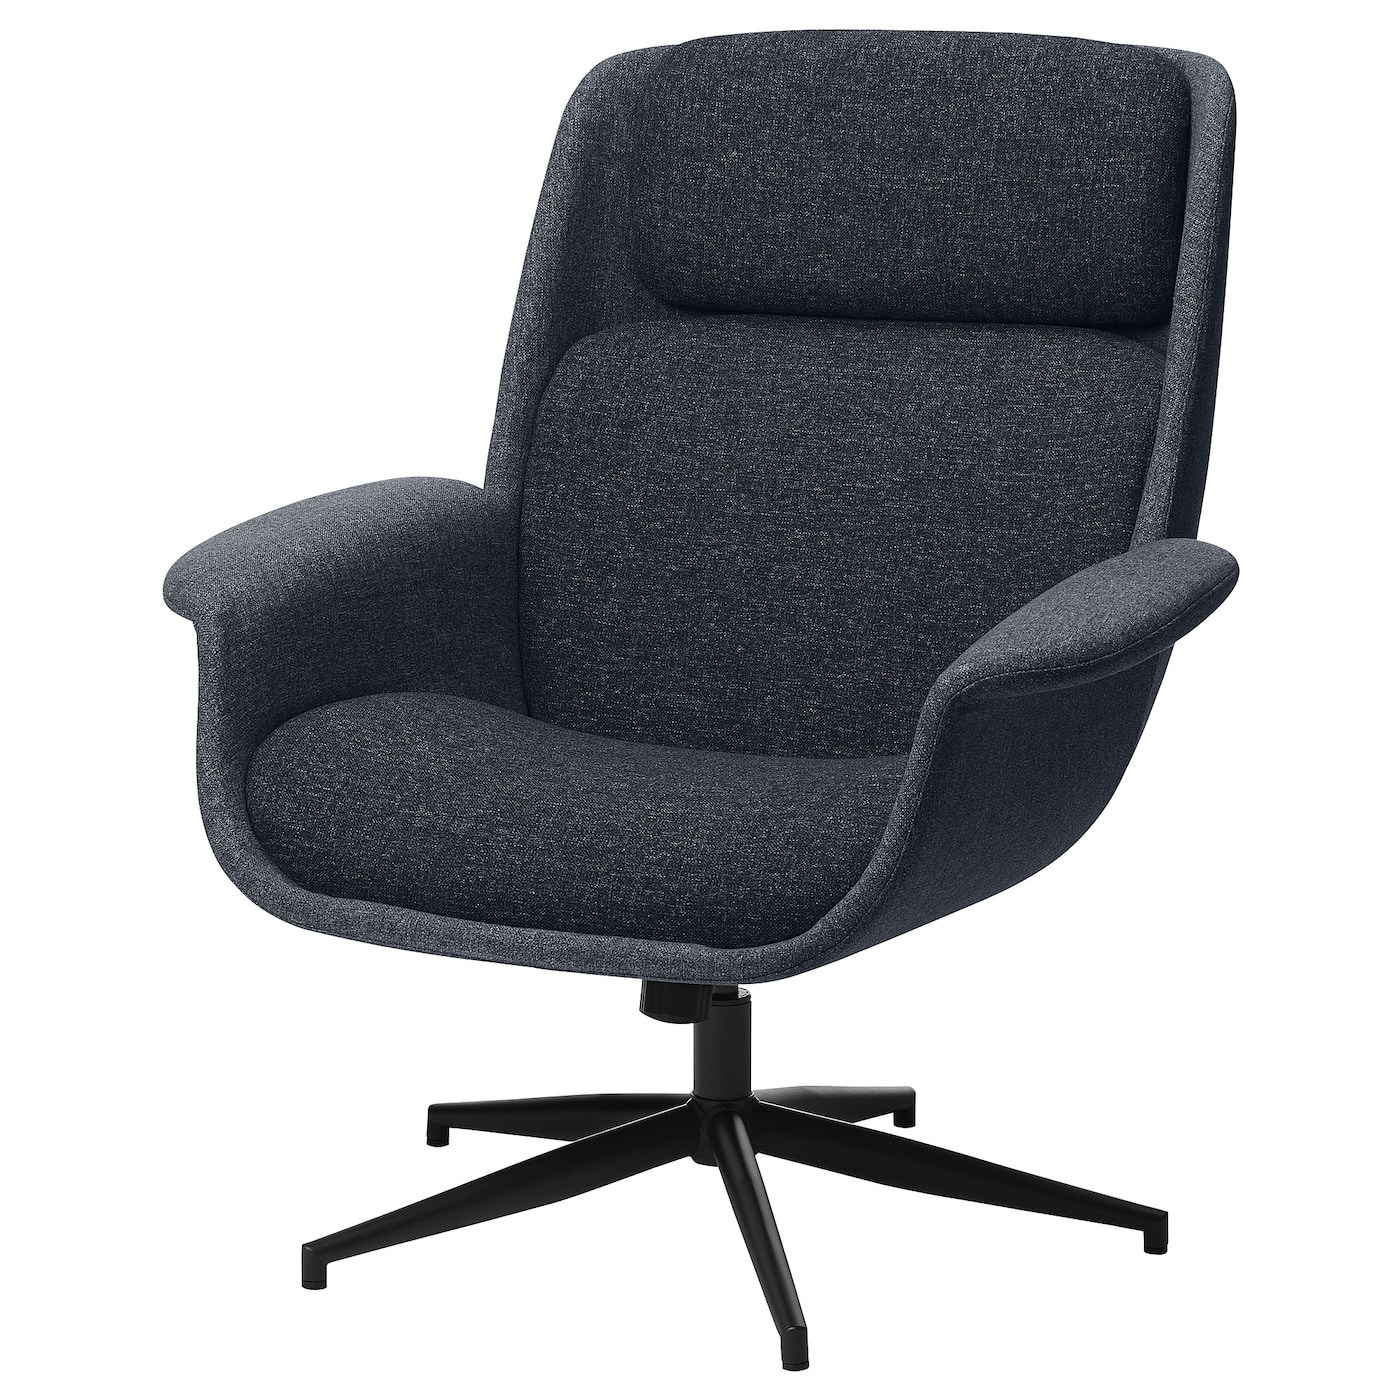 ЭЛЕБИ Вращающееся кресло, Гуннаред средний серый/темно-серый ÄLEBY IKEA кресло офисное вращающееся arlon единый размер серый